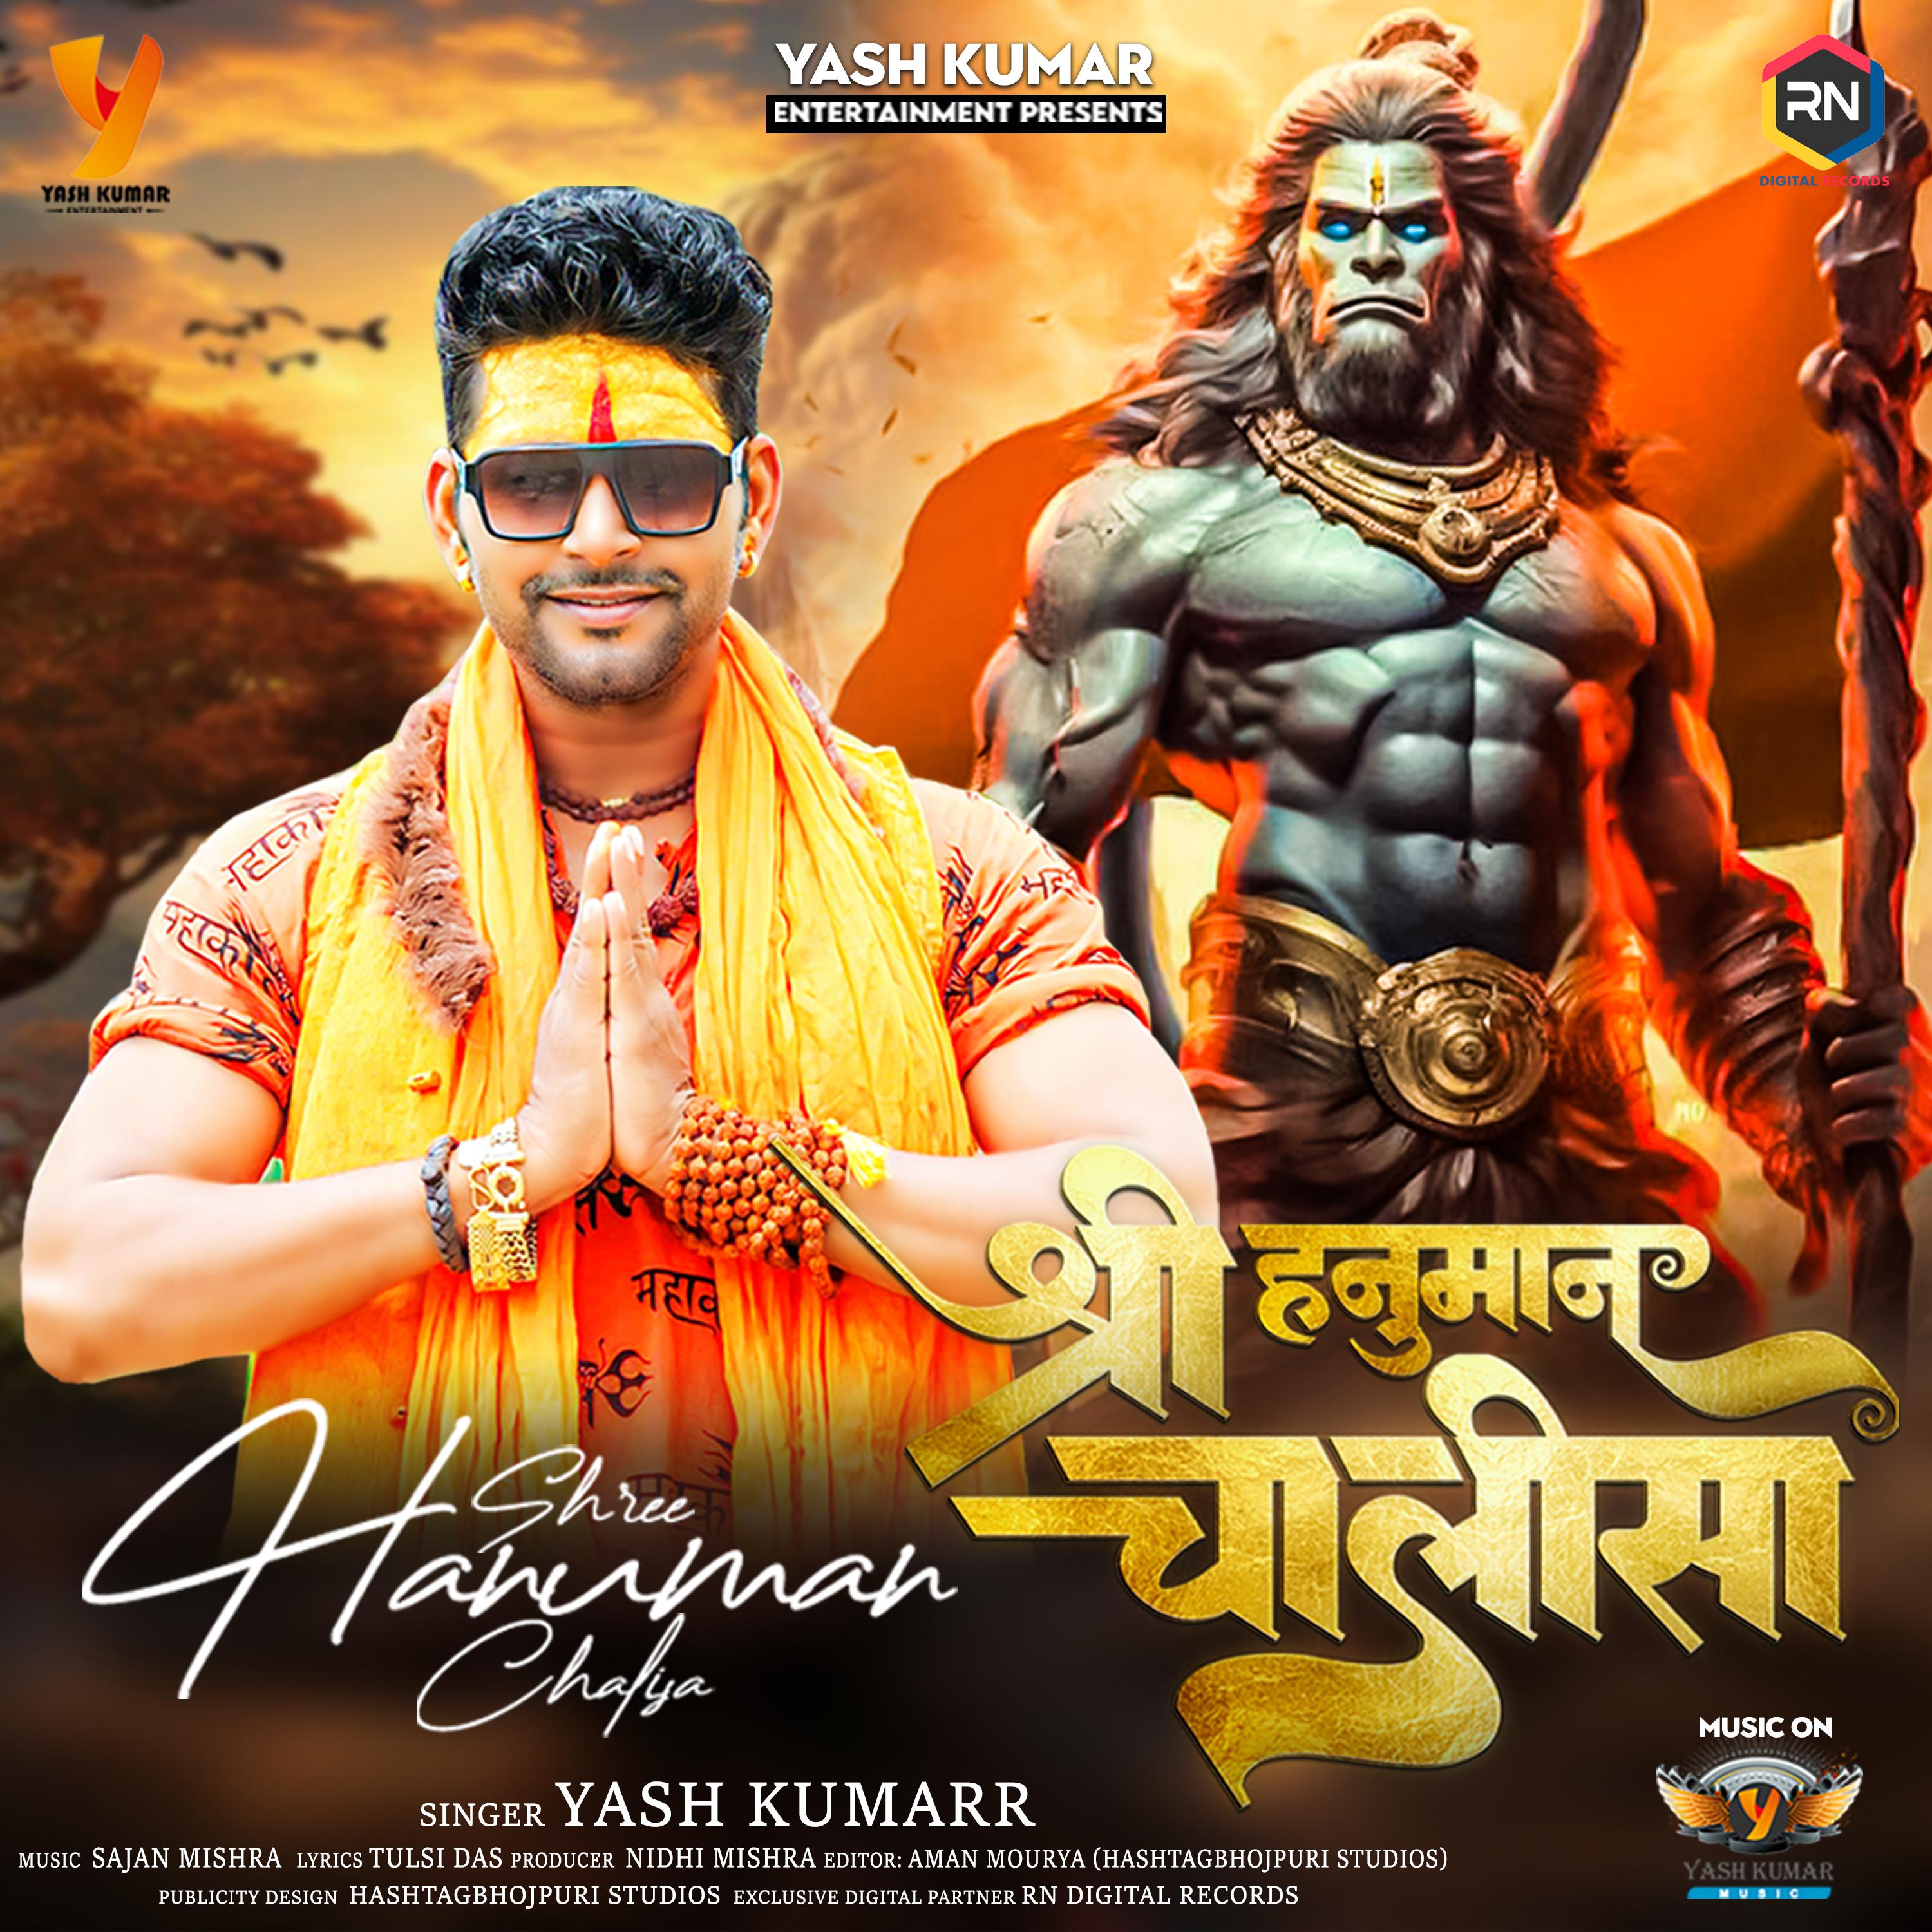 Постер альбома Shree Hanuman Chalisa